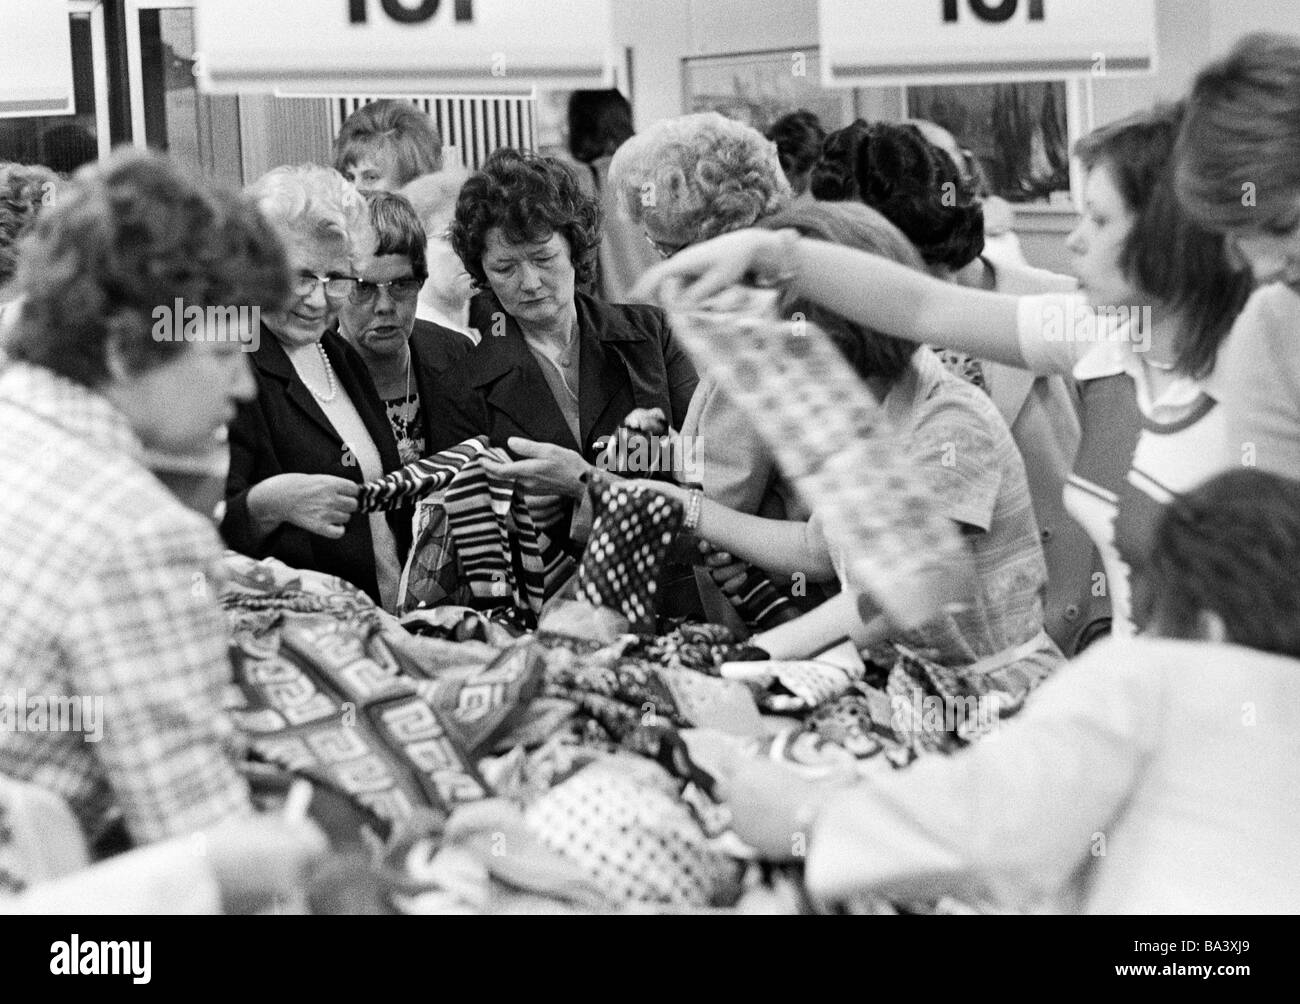 70er Jahre, schwarz / weiß Foto, Menschen auf Einkaufsbummel, Glattstellung Verkauf, mehrere Frauen Suche nach Schnäppchen aus einer Tabelle stöbern Stockfoto